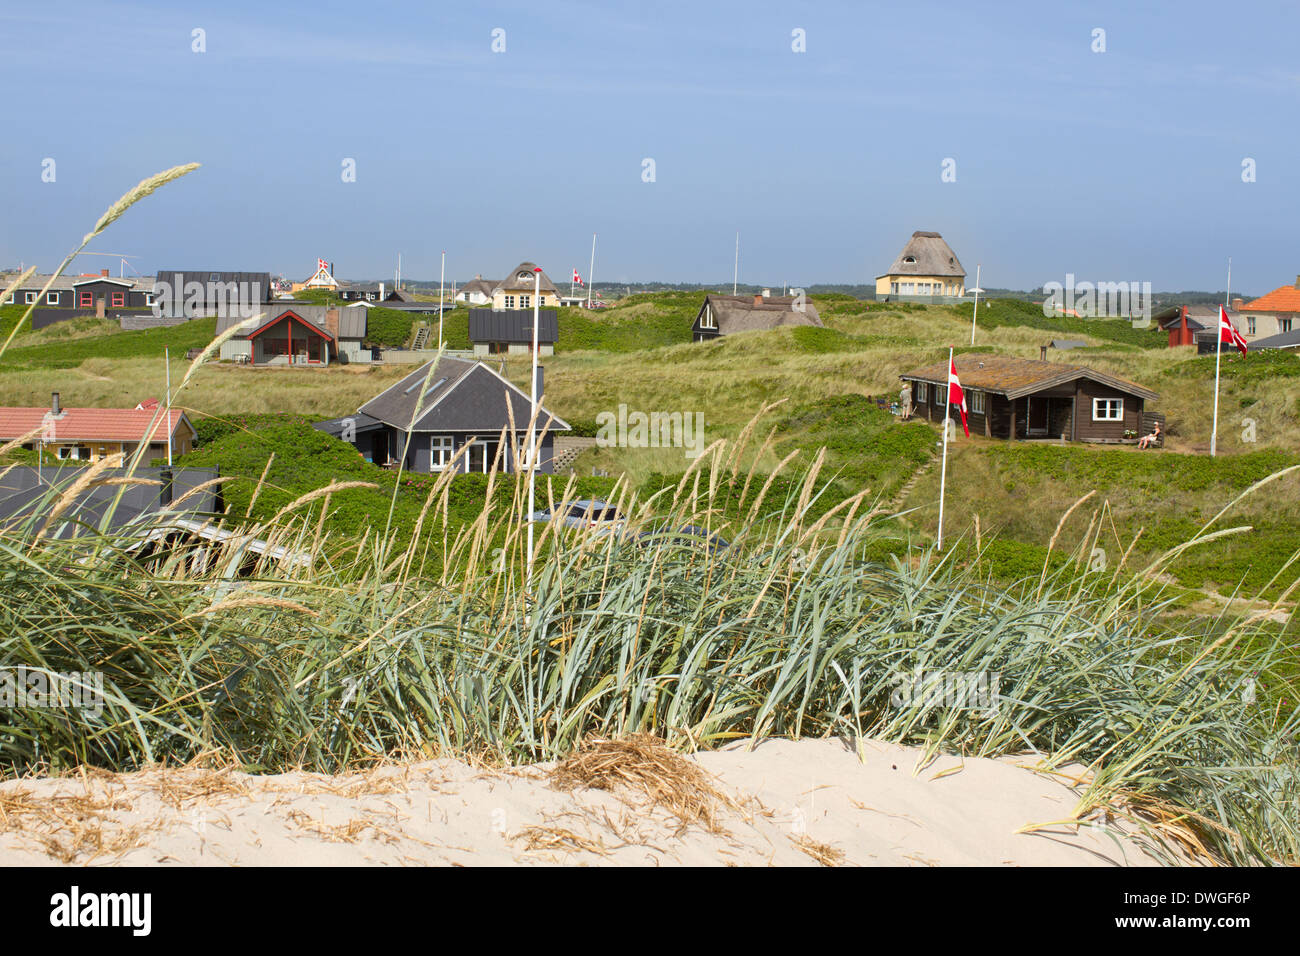 Vista panoramica di case di villeggiatura al mare del Nord rive del Western Jutland, Danimarca. Sole splende e il cielo è blu brillante. Foto Stock